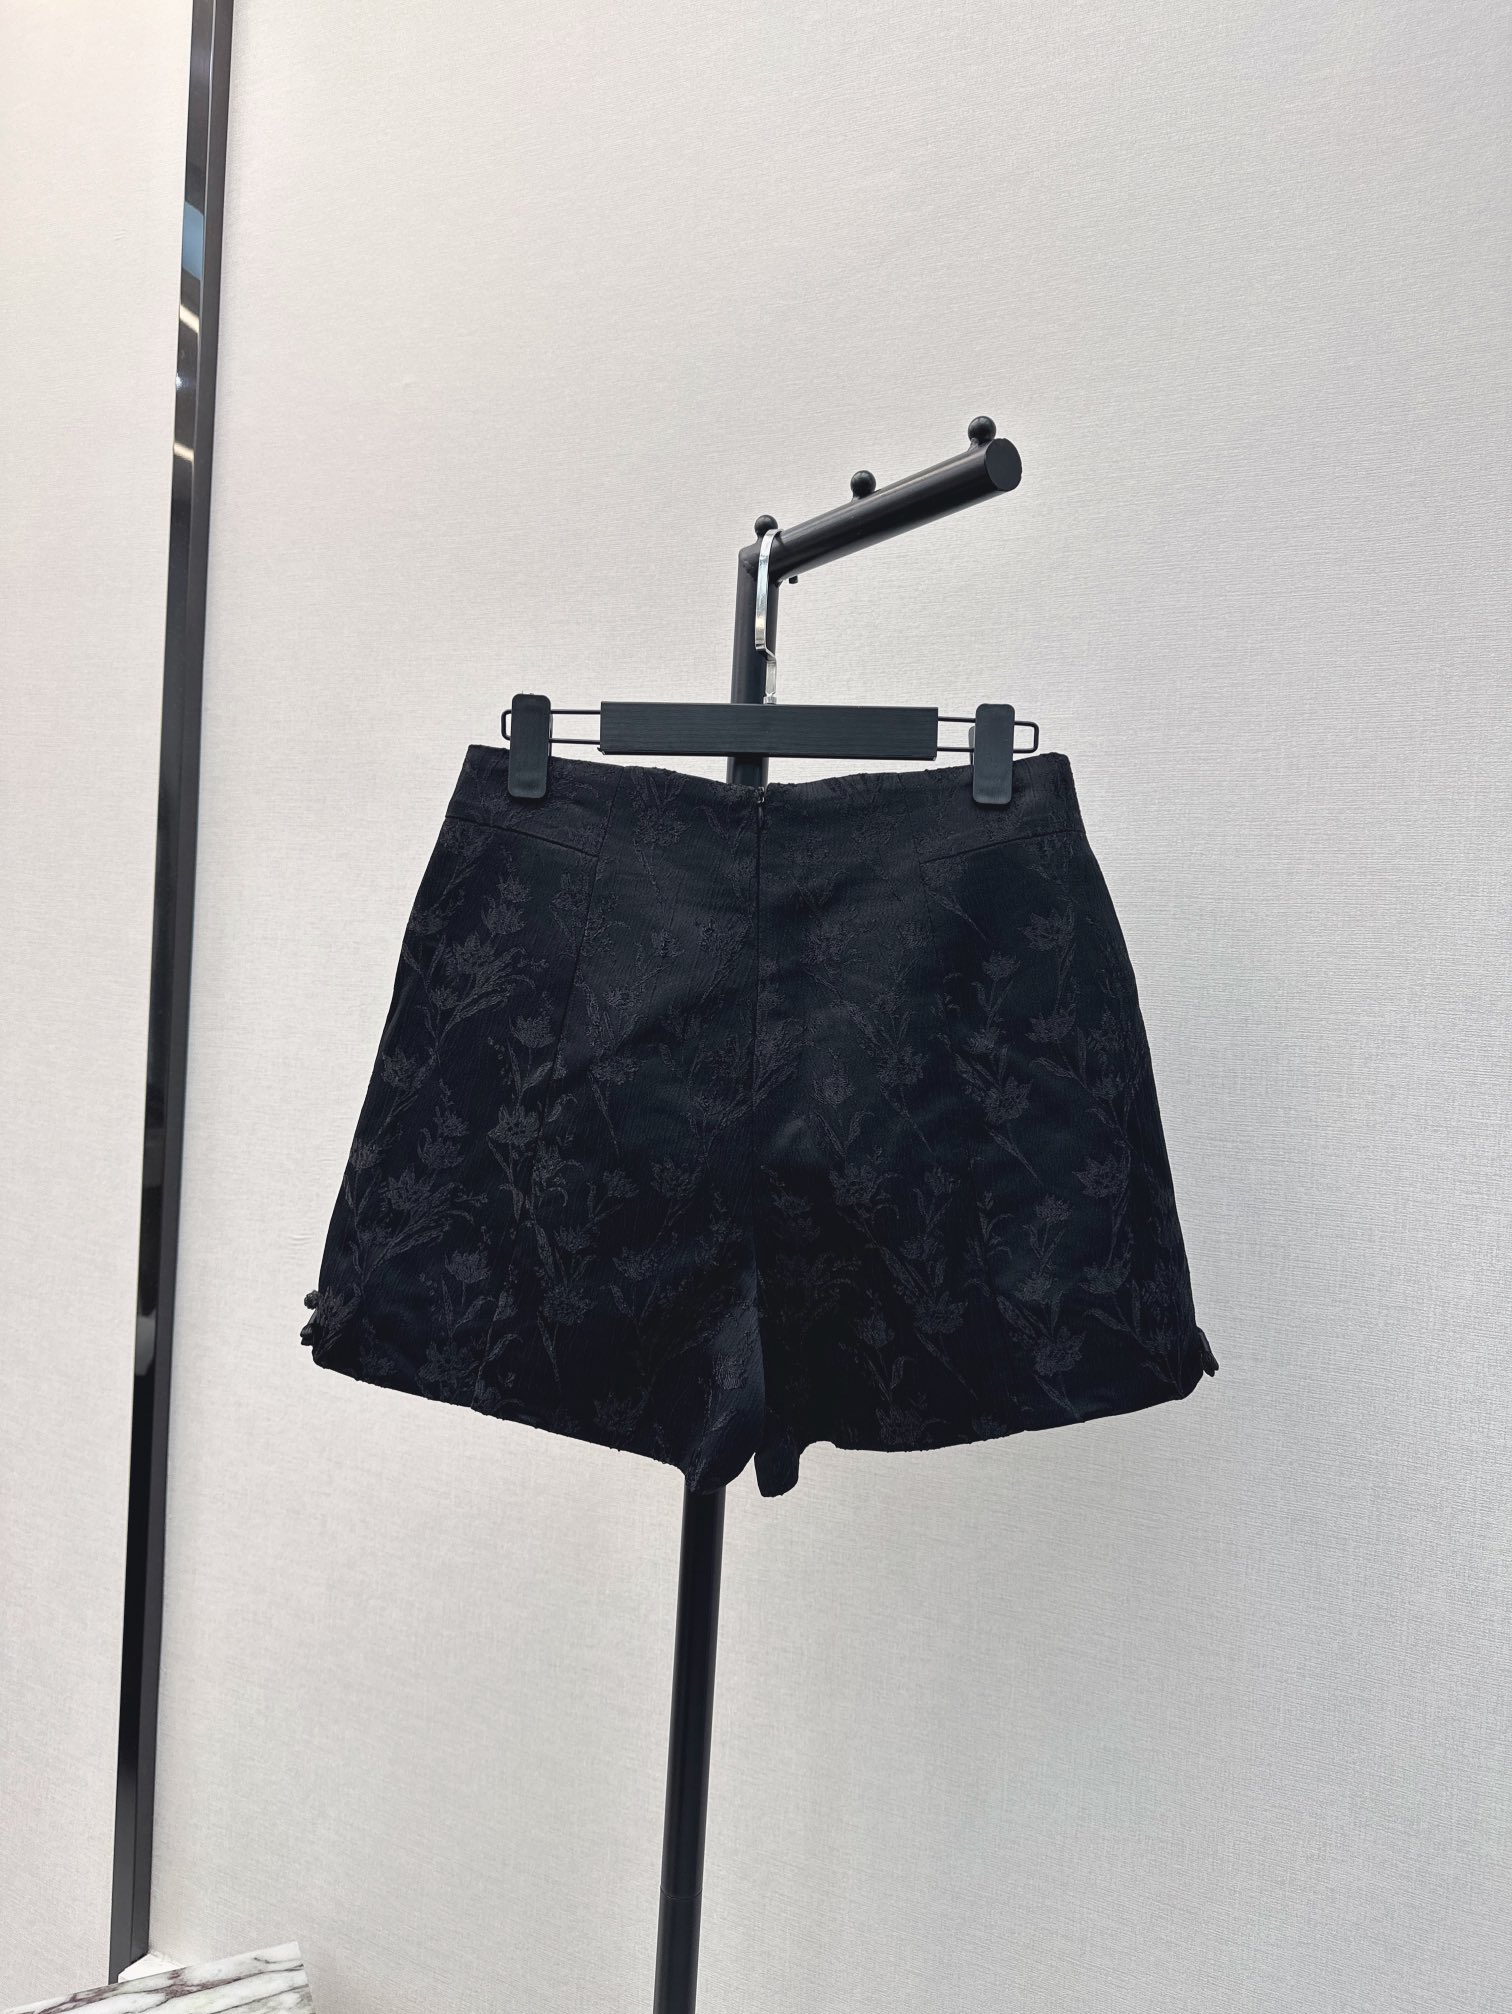 时髦小众设计24Ss春夏最新款新中式提花短裤简洁利落的设计整个就显得很干净又小特别加宽高腰线可以拉长腿部